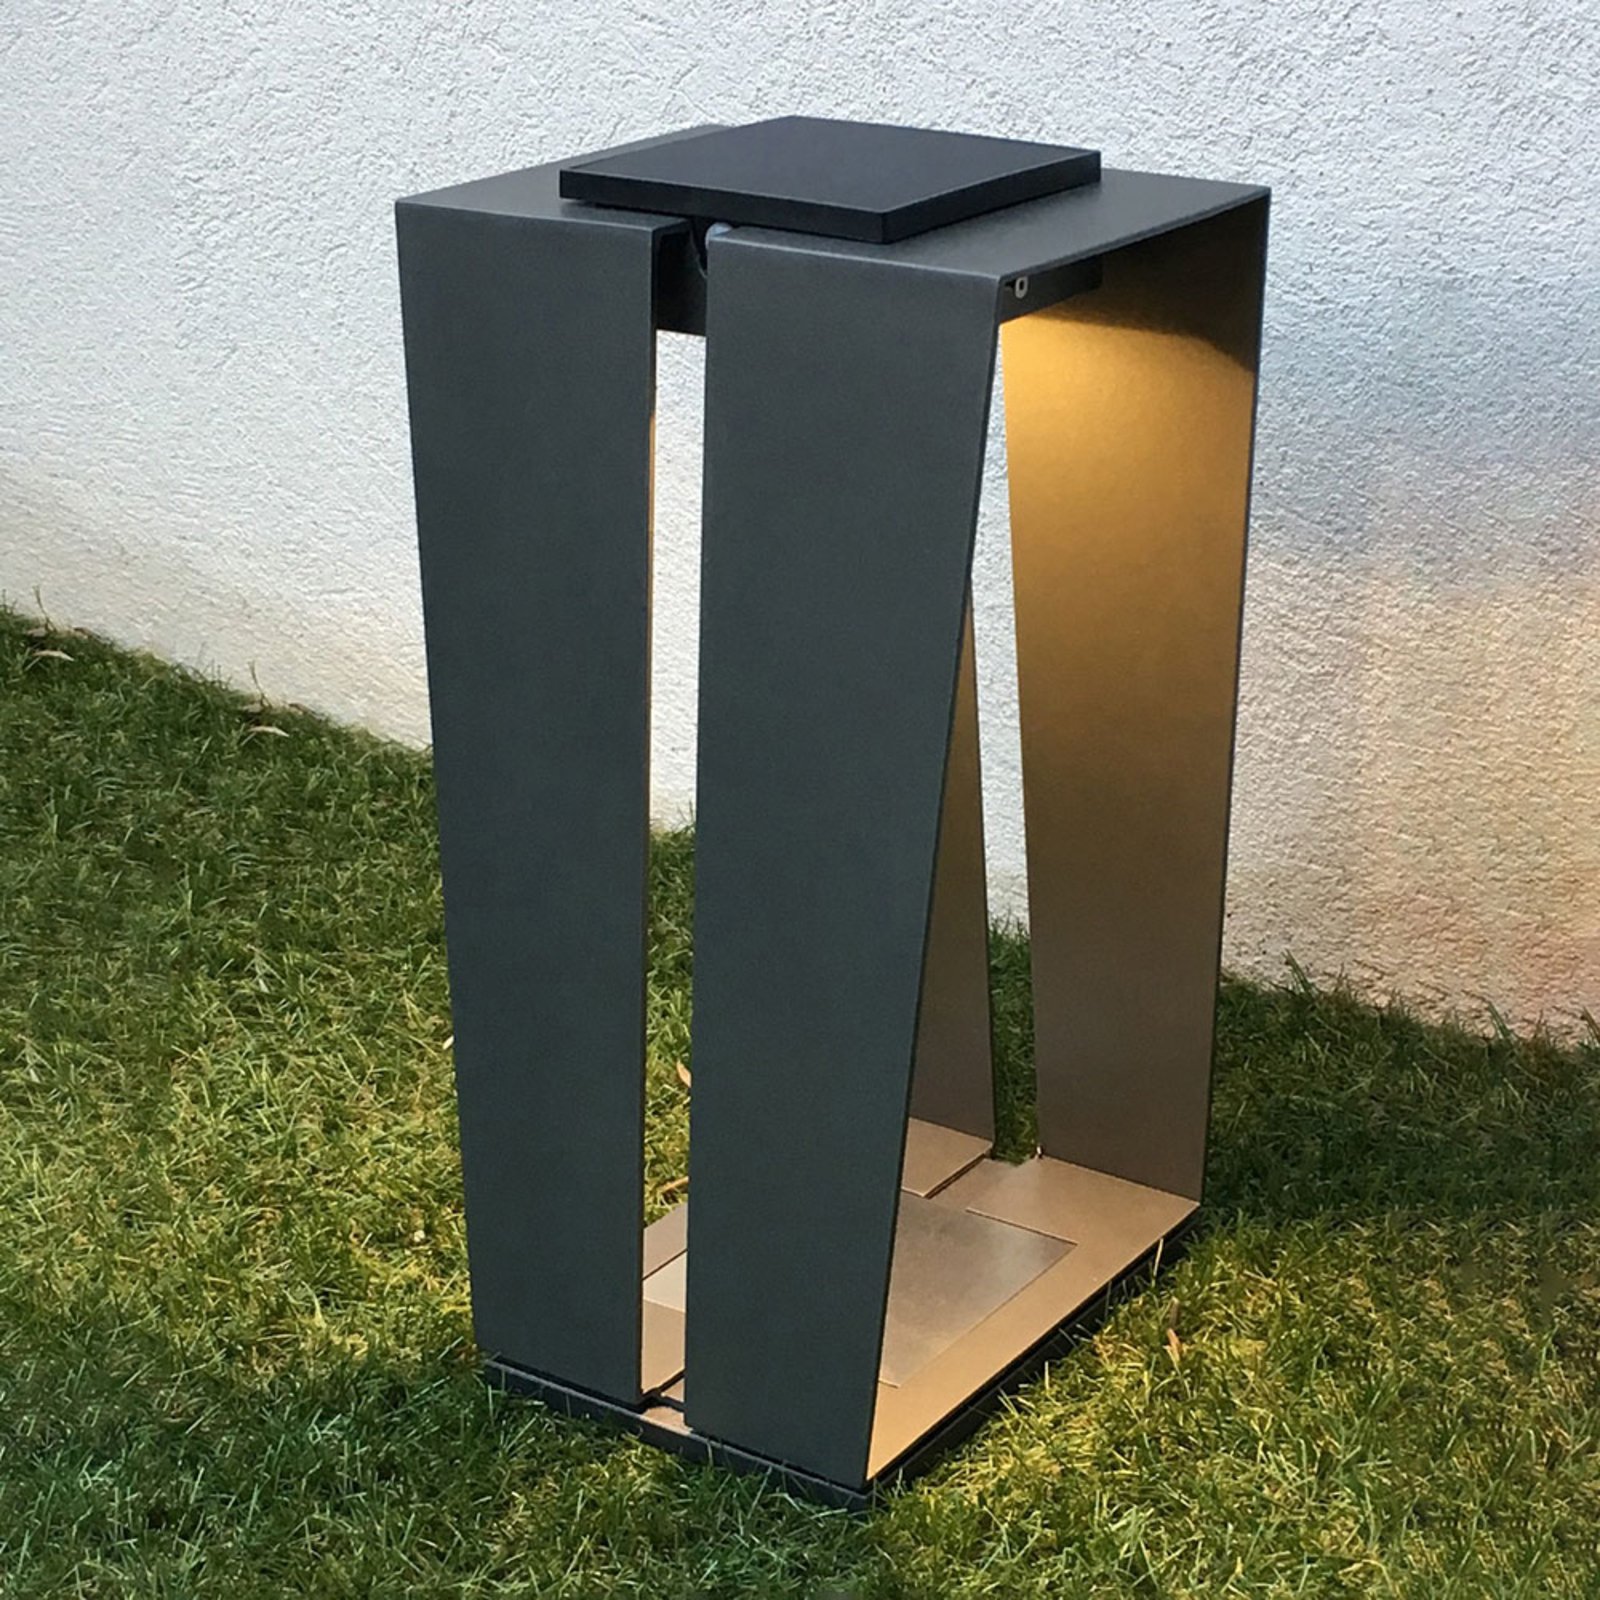 LED-solcellslampa Skaal av aluminium, 40 cm, grå